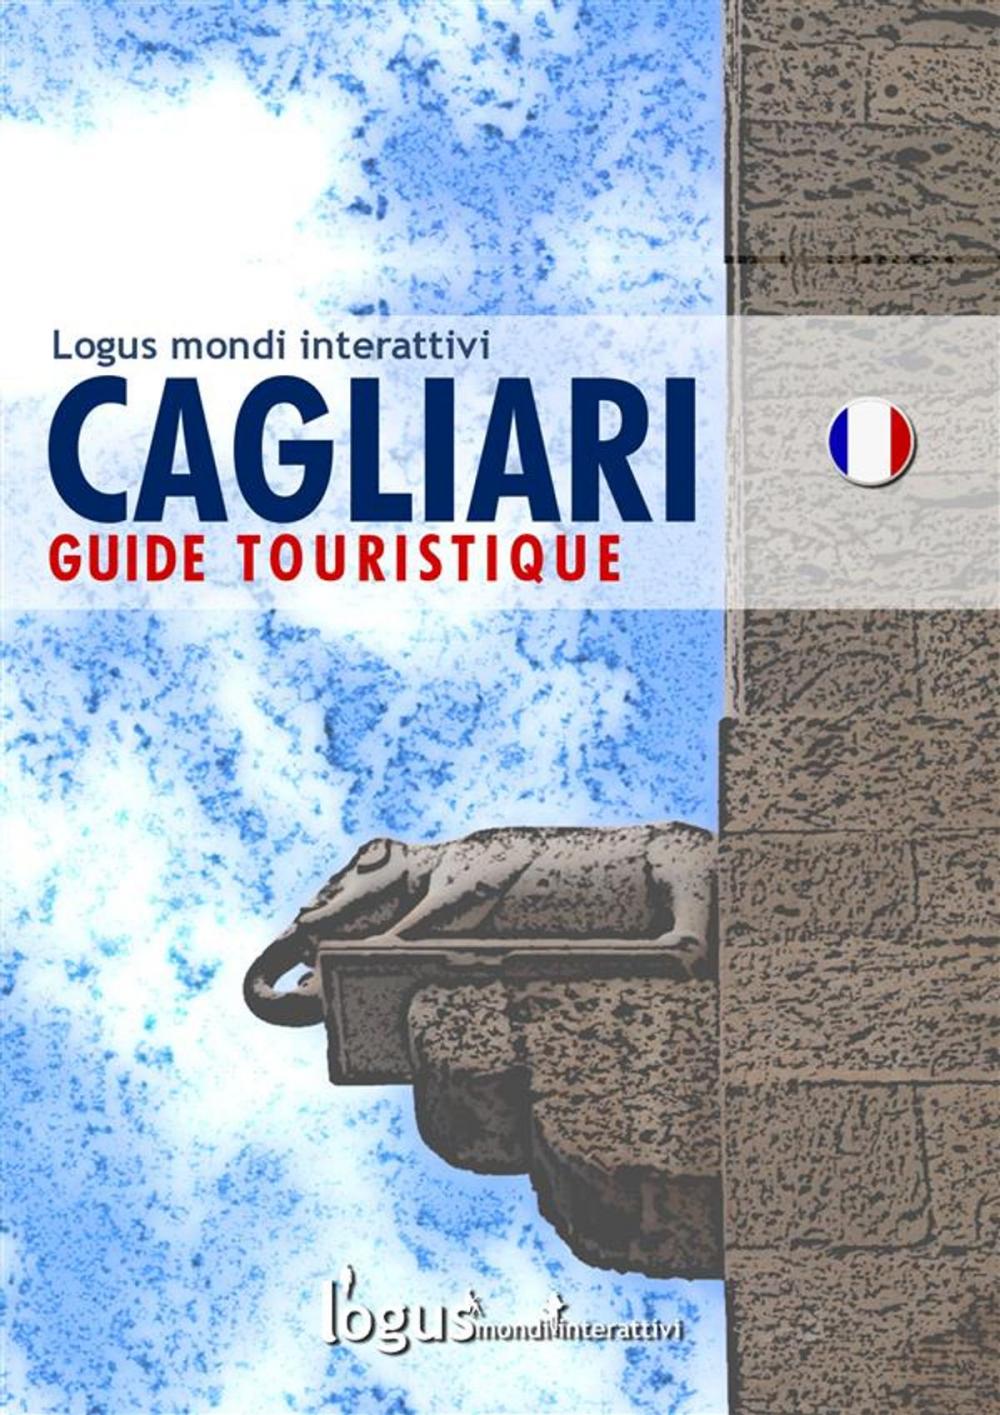 Big bigCover of Cagliari Guide touristique